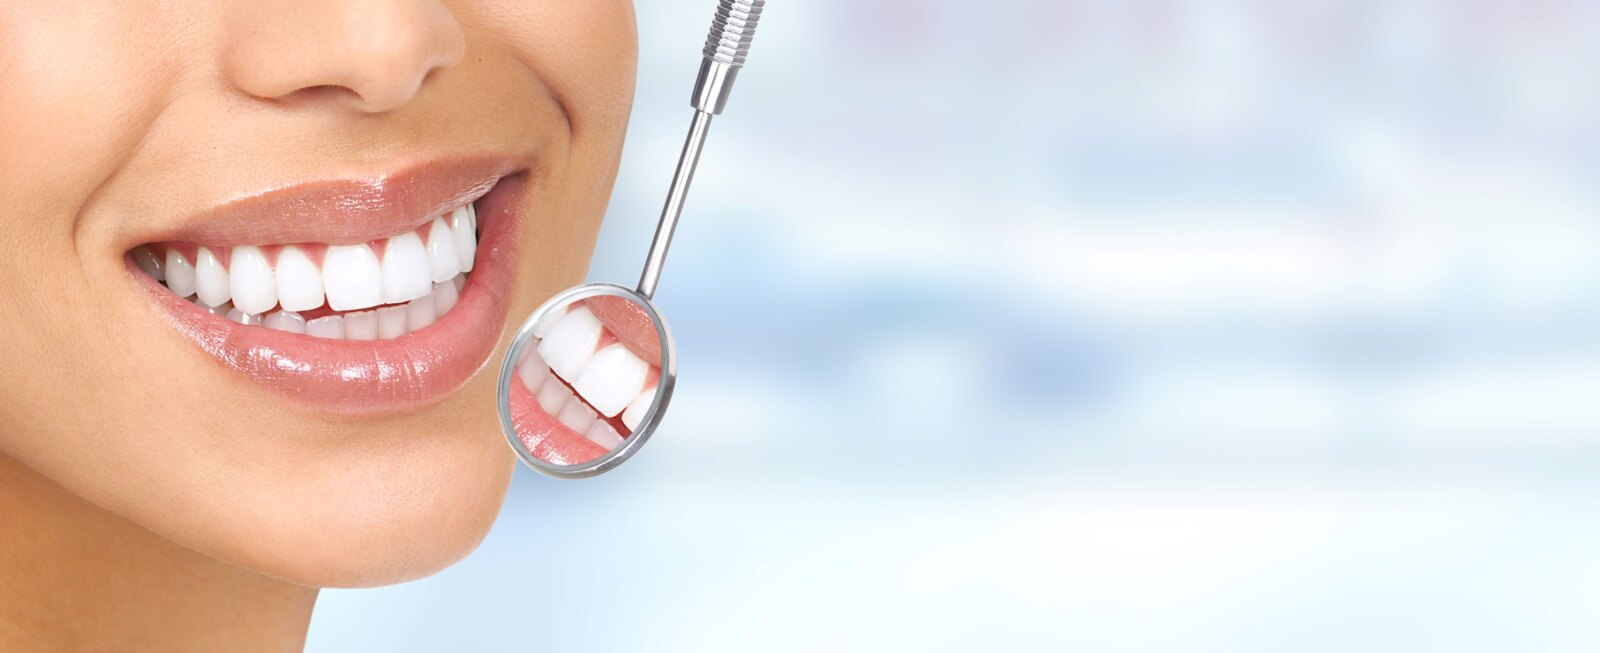 Pielęgnacja implantów zębowych